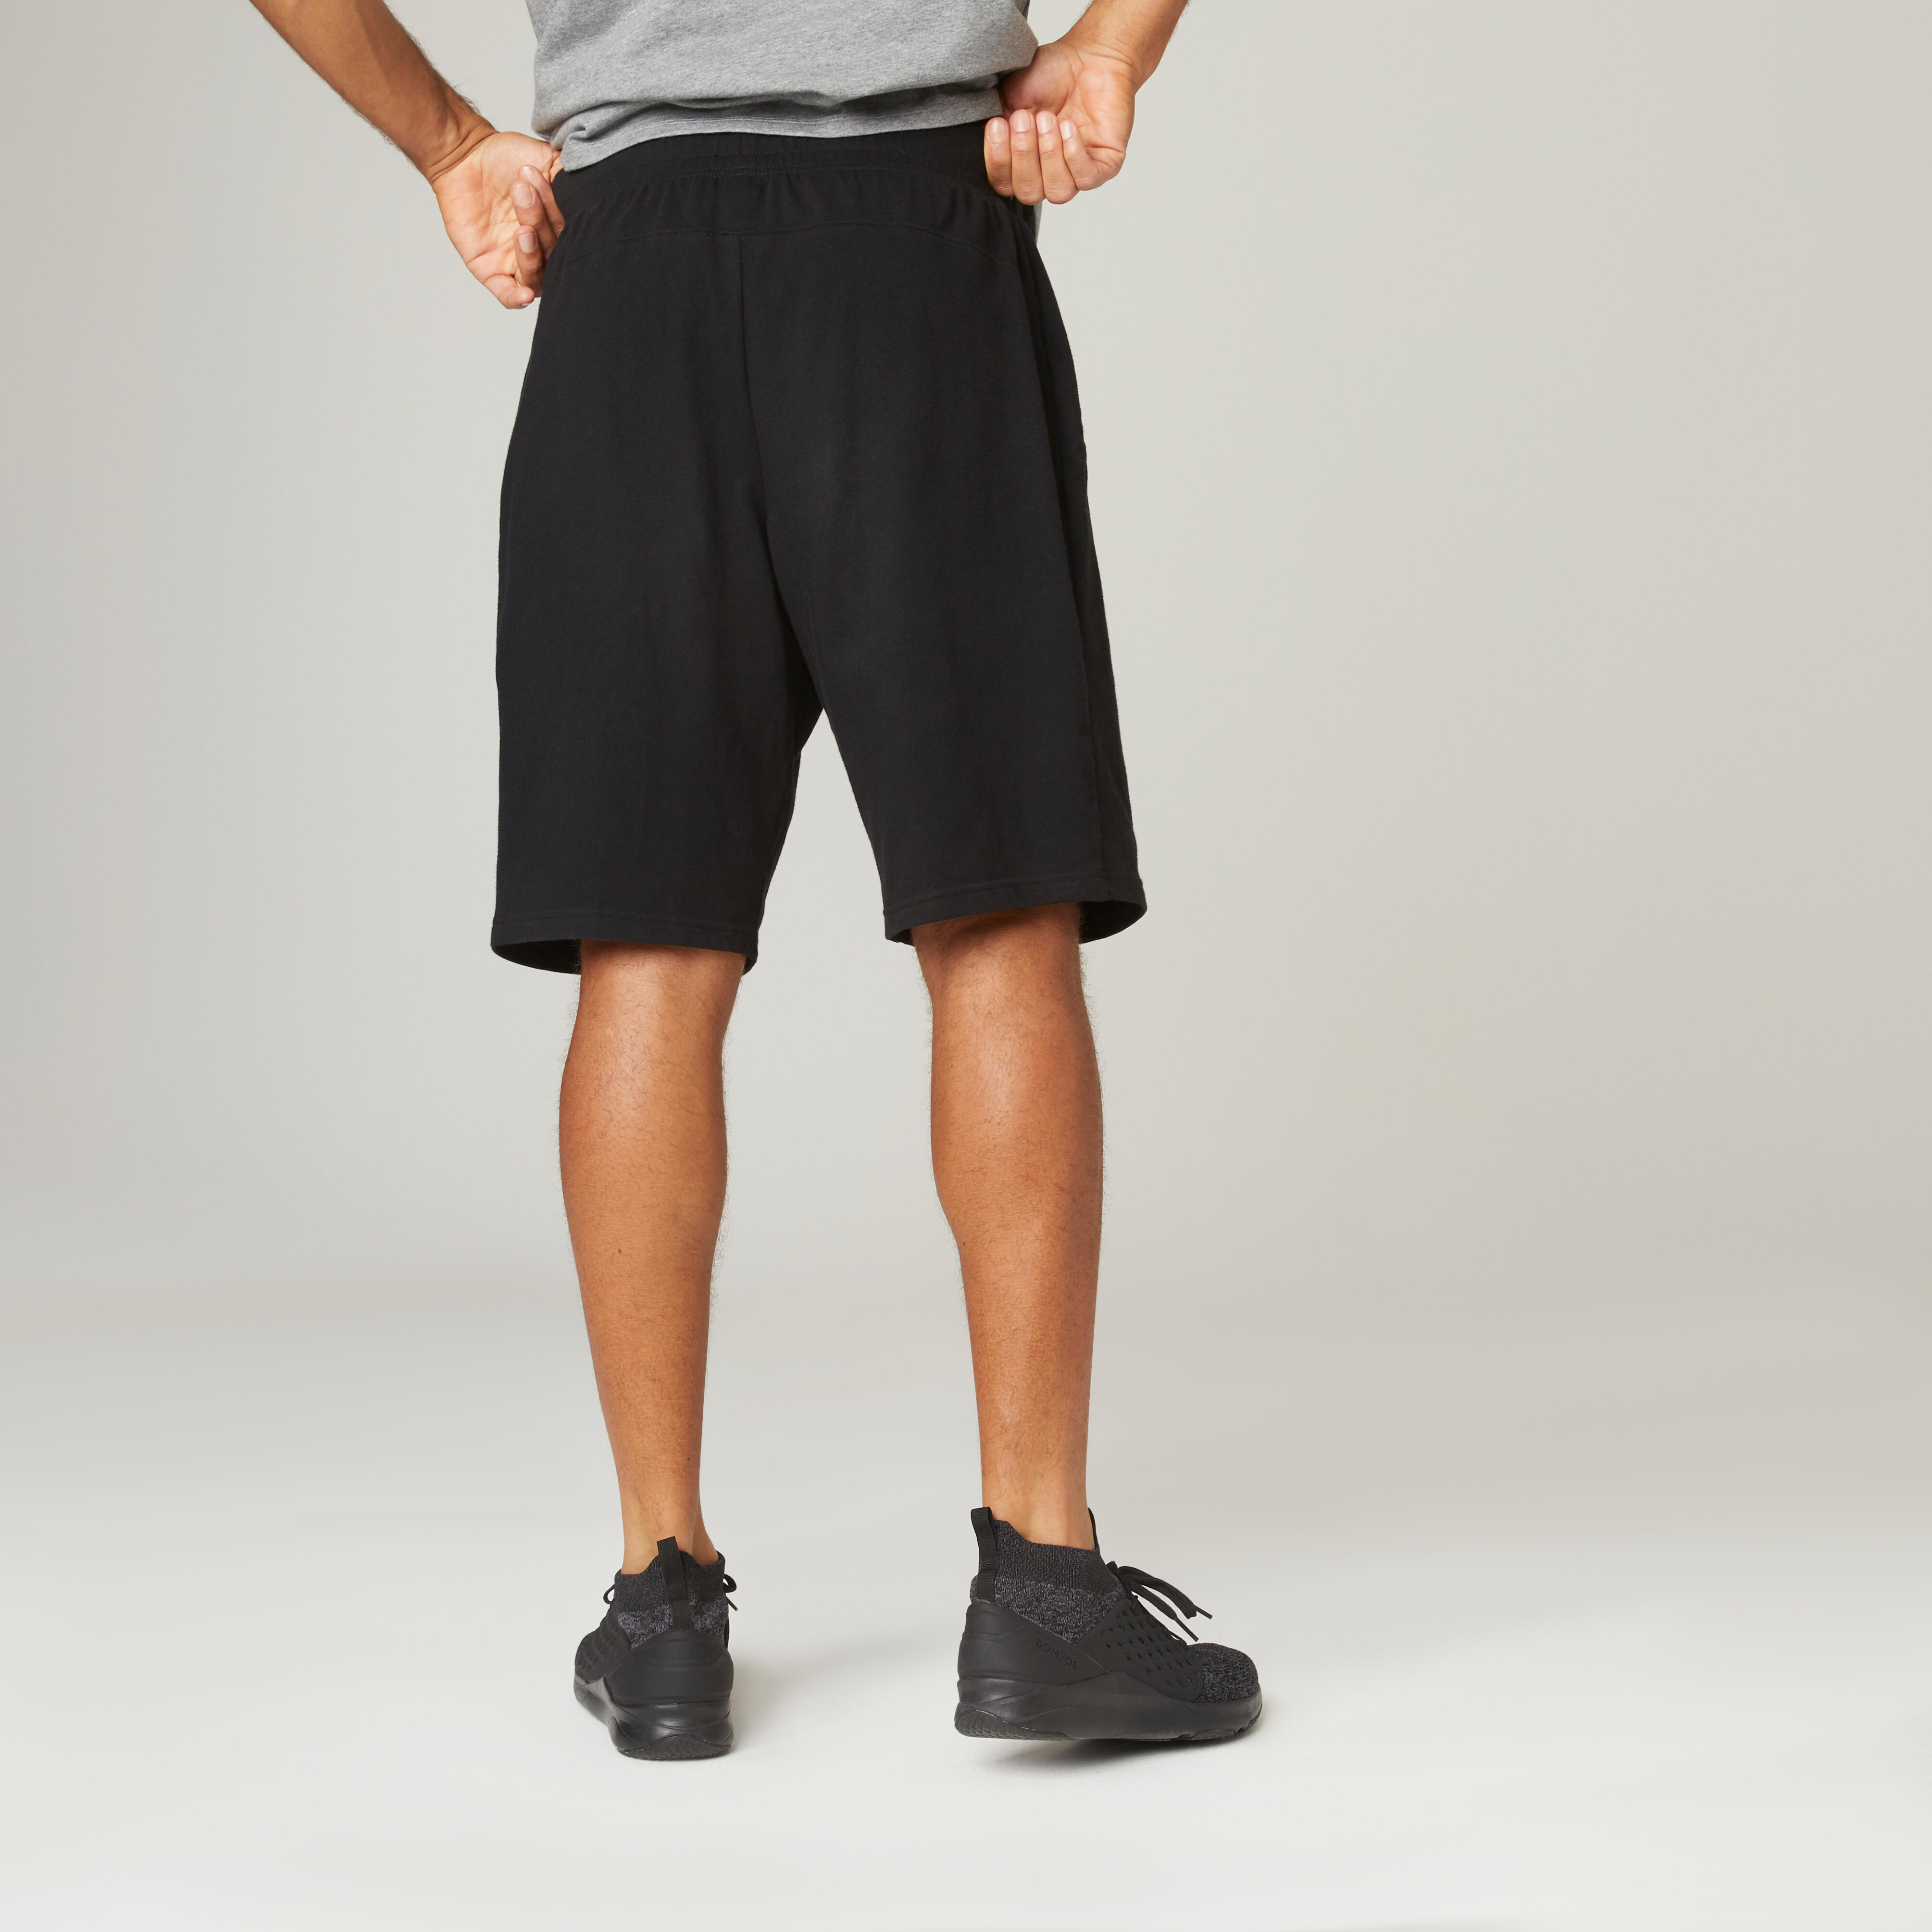 Pantalon scurt 500 Fitness Negru Bărbaţi La Oferta Online decathlon imagine La Oferta Online